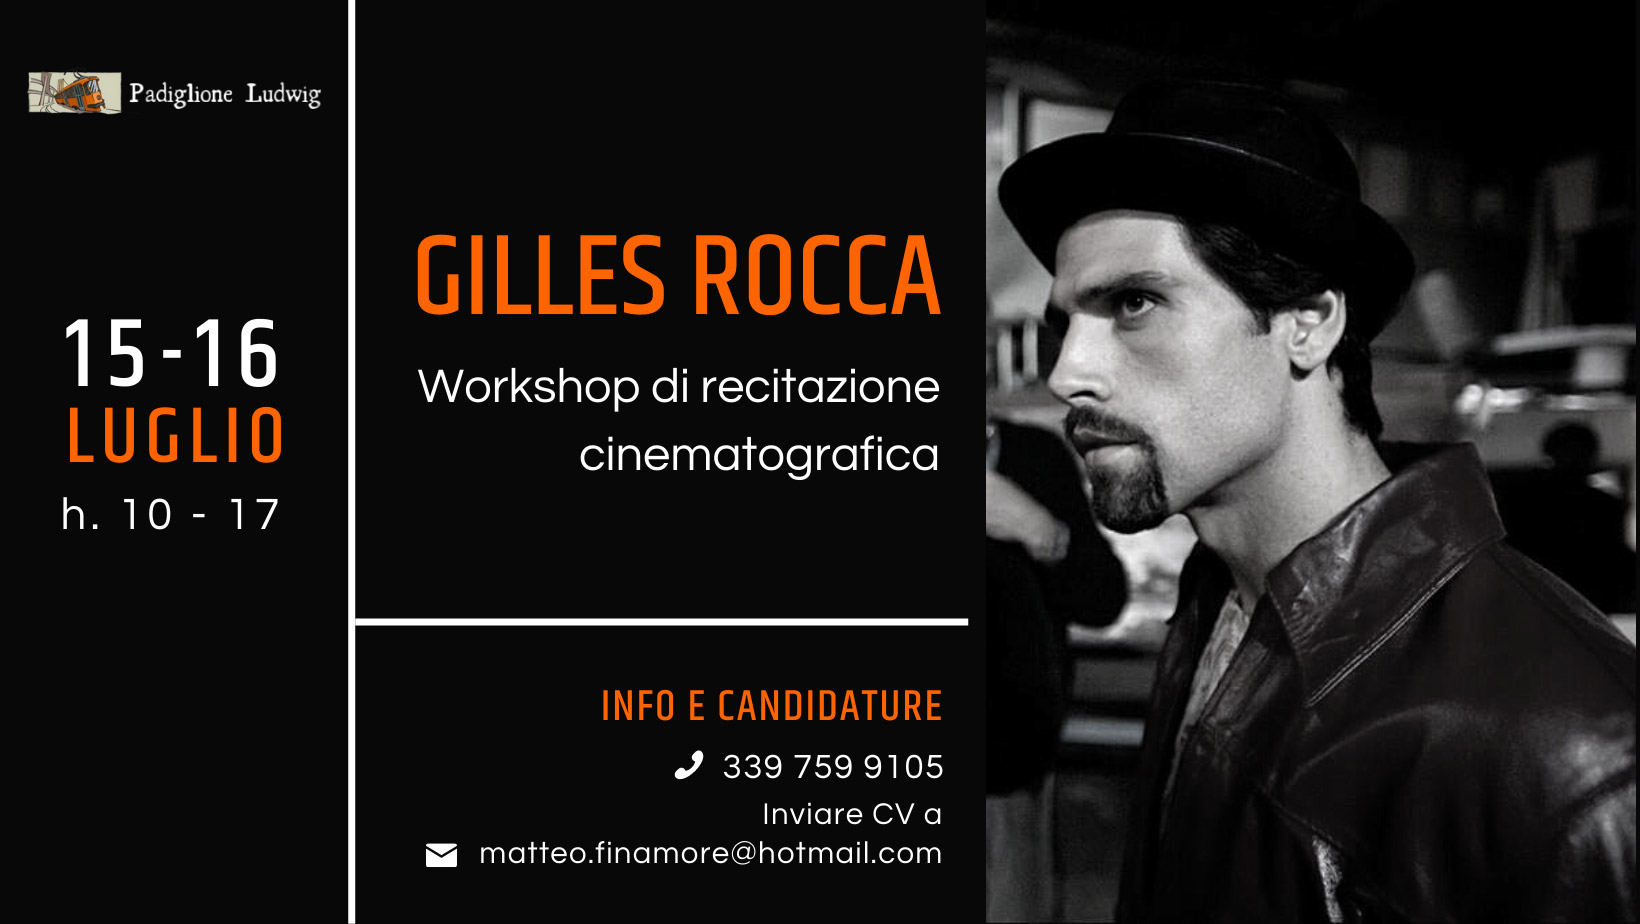 Workshop di recitazione cinematografica a cura di Gilles Rocca